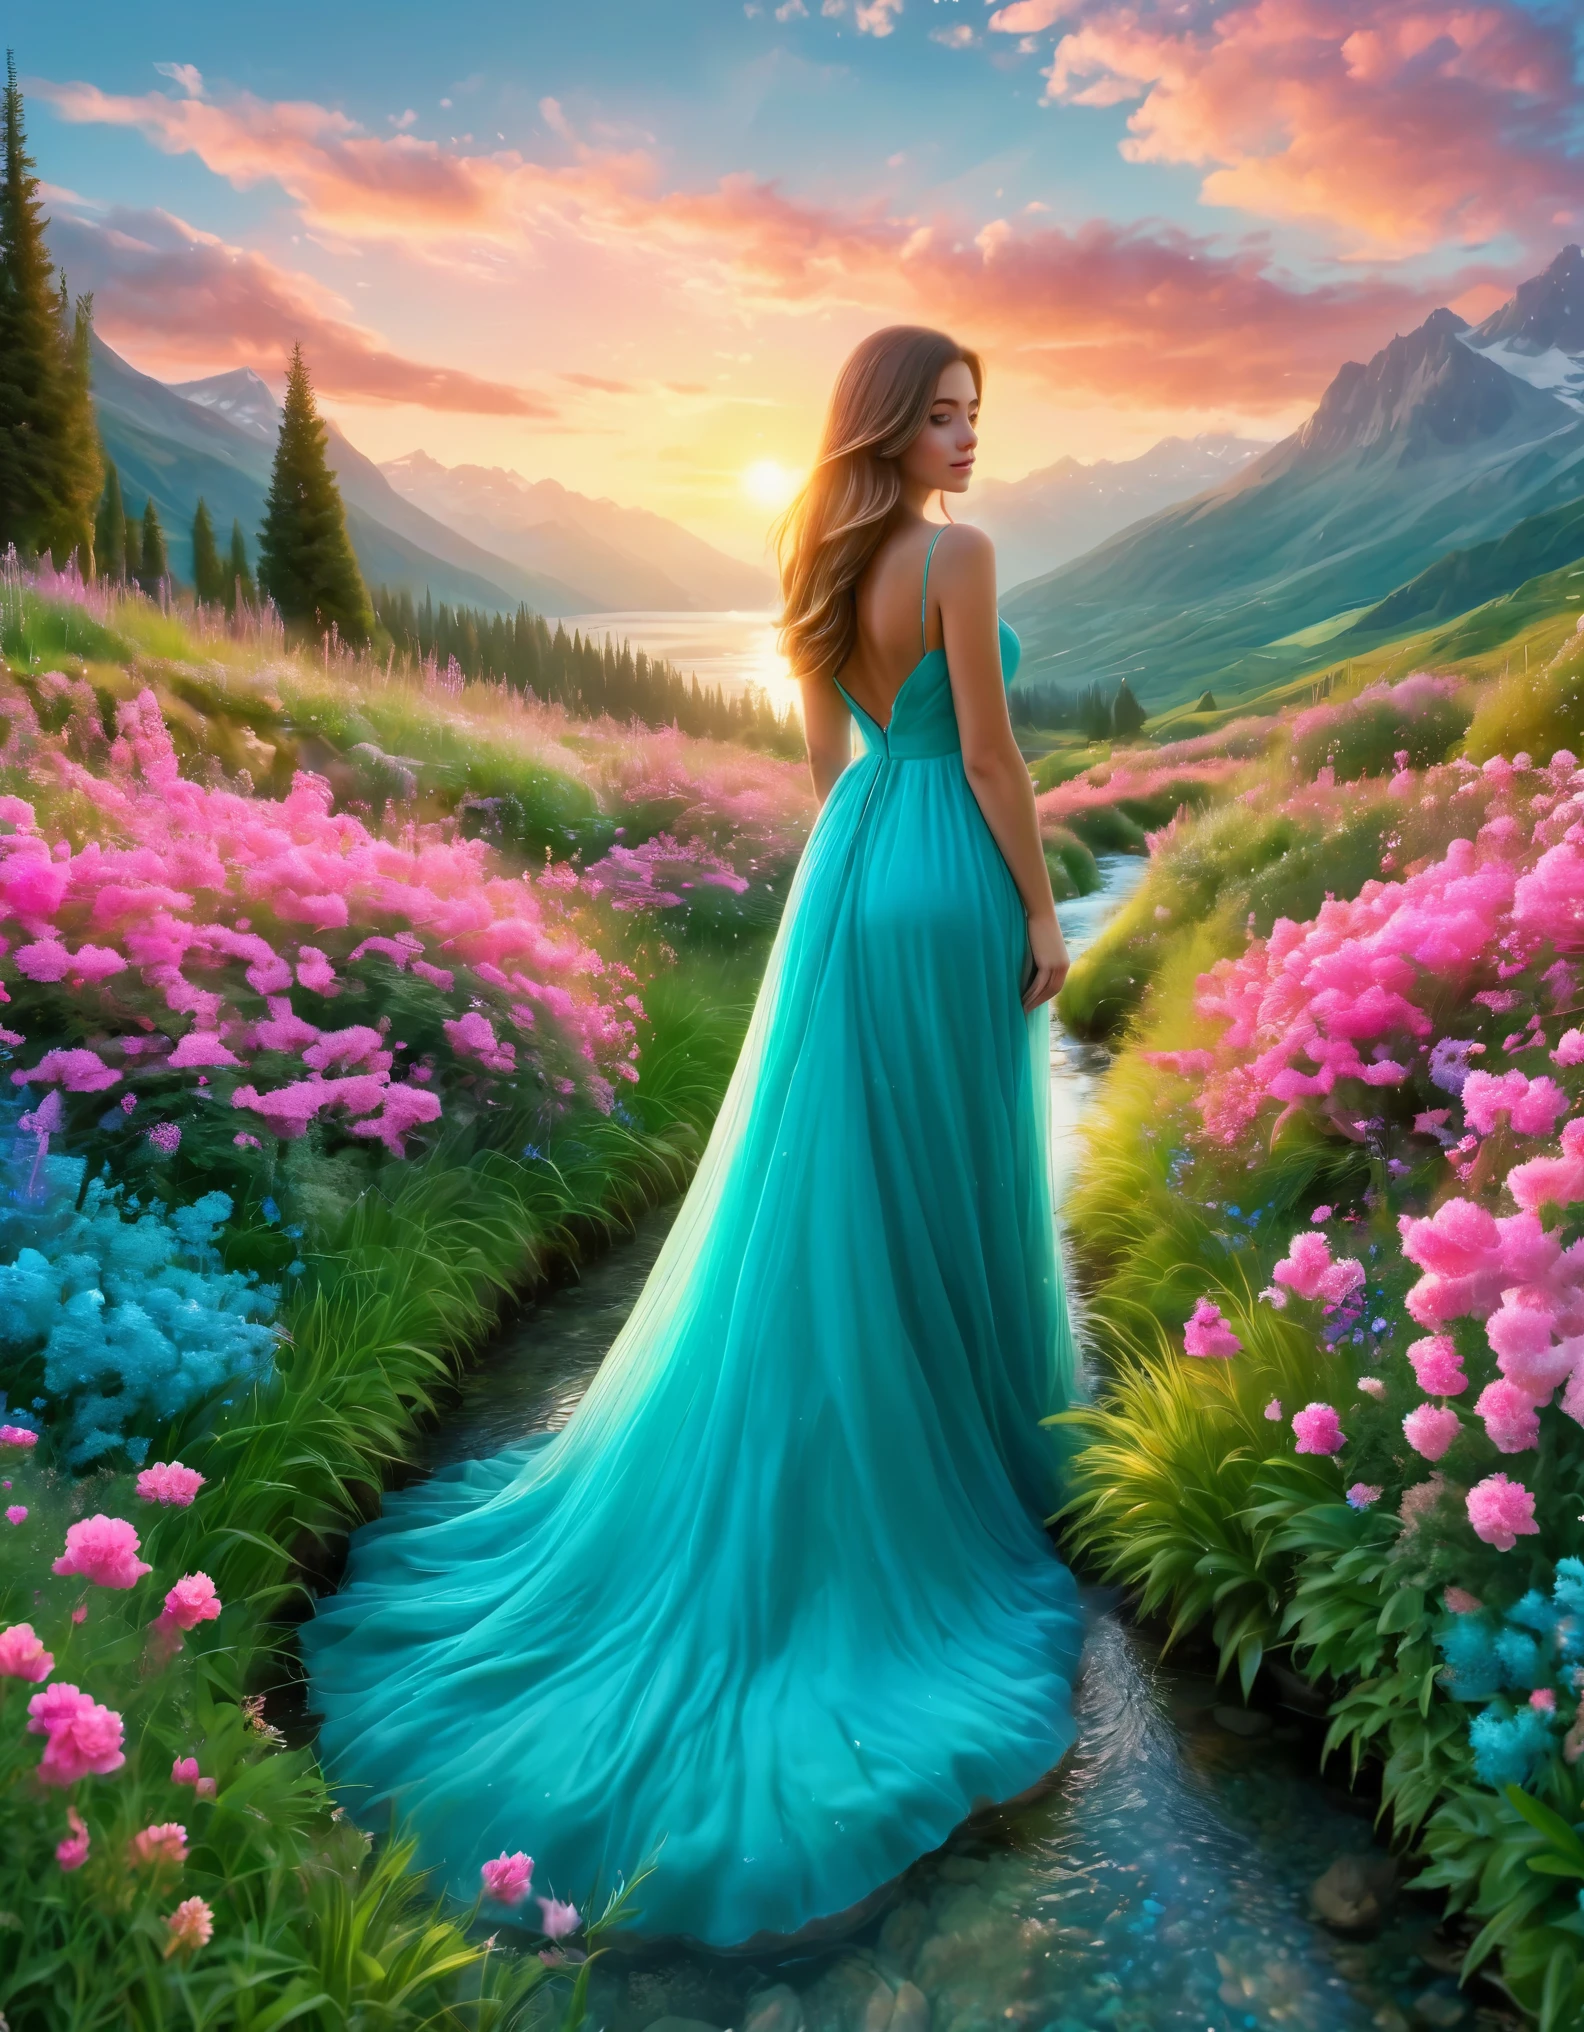 Créez l&#39;image d&#39;une belle femme debout dans un jardin enchanté au lever du soleil.. La femme porte une robe turquoise fluide qui ondule autour d&#39;elle alors qu&#39;elle se tient dos au spectateur.. Elle est entourée d&#39;une mer vibrante, fleurs roses qui bordent un étroit ruisseau qui traverse la scène. L&#39;herbe verte luxuriante sur la gauche contraste avec les roses vifs des fleurs. Le paysage s&#39;étend jusqu&#39;aux eaux turquoise sereines au loin, bordé de montagnes majestueuses. Le ciel au-dessus est d&#39;un bleu éclatant avec quelques nuages duveteux, et le soleil vient juste de se lever, jetant un chaud, lumière dorée sur toute la scène. L&#39;ambiance générale est magique et sereine, évoquant un sentiment d&#39;émerveillement et de tranquillité.